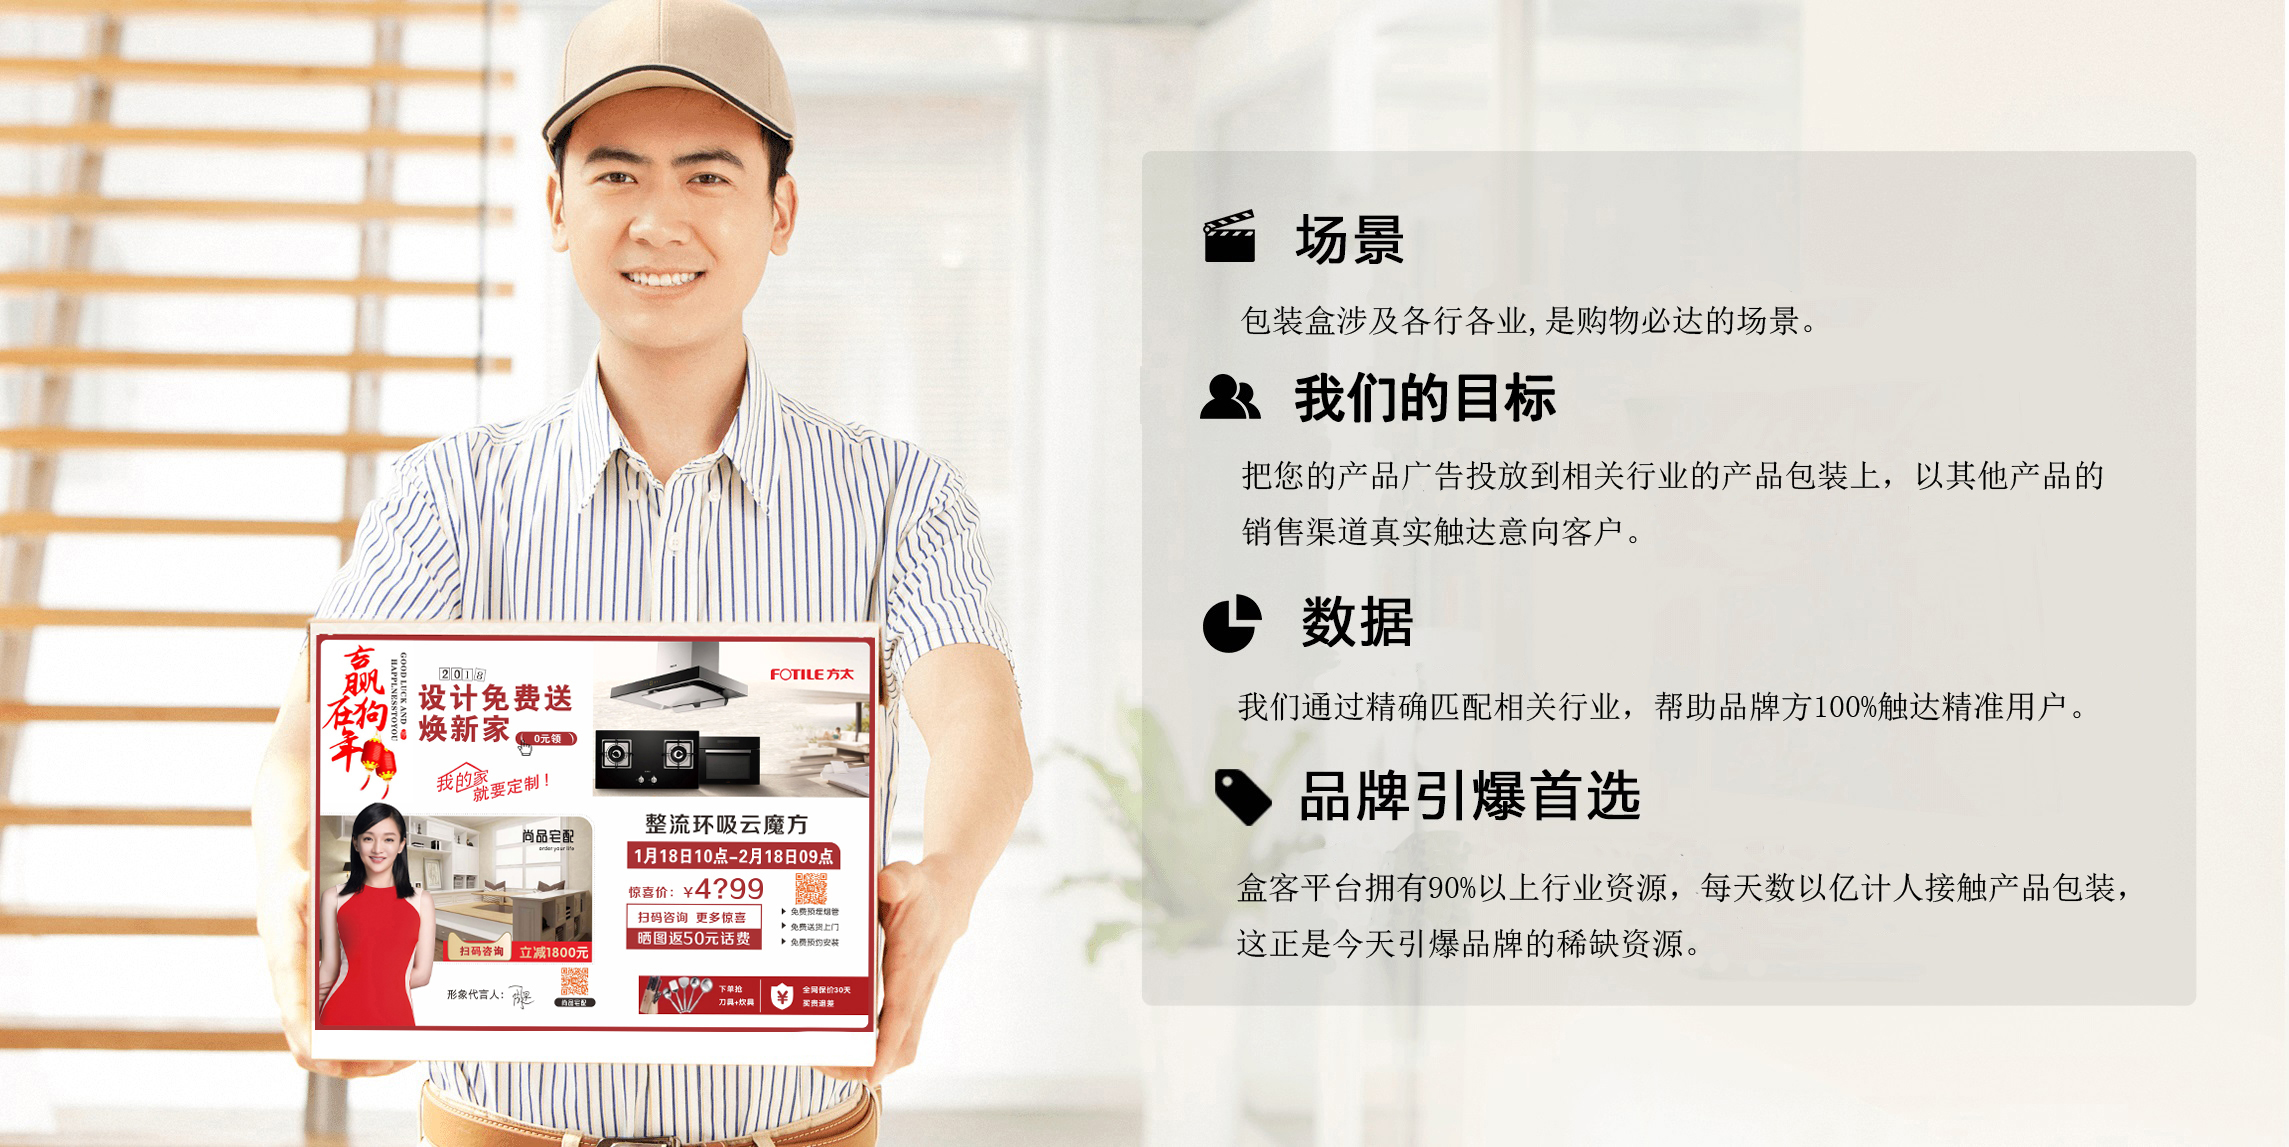 广州网站建设：与佛山盒客文化传媒有限公司签约合作网站建设